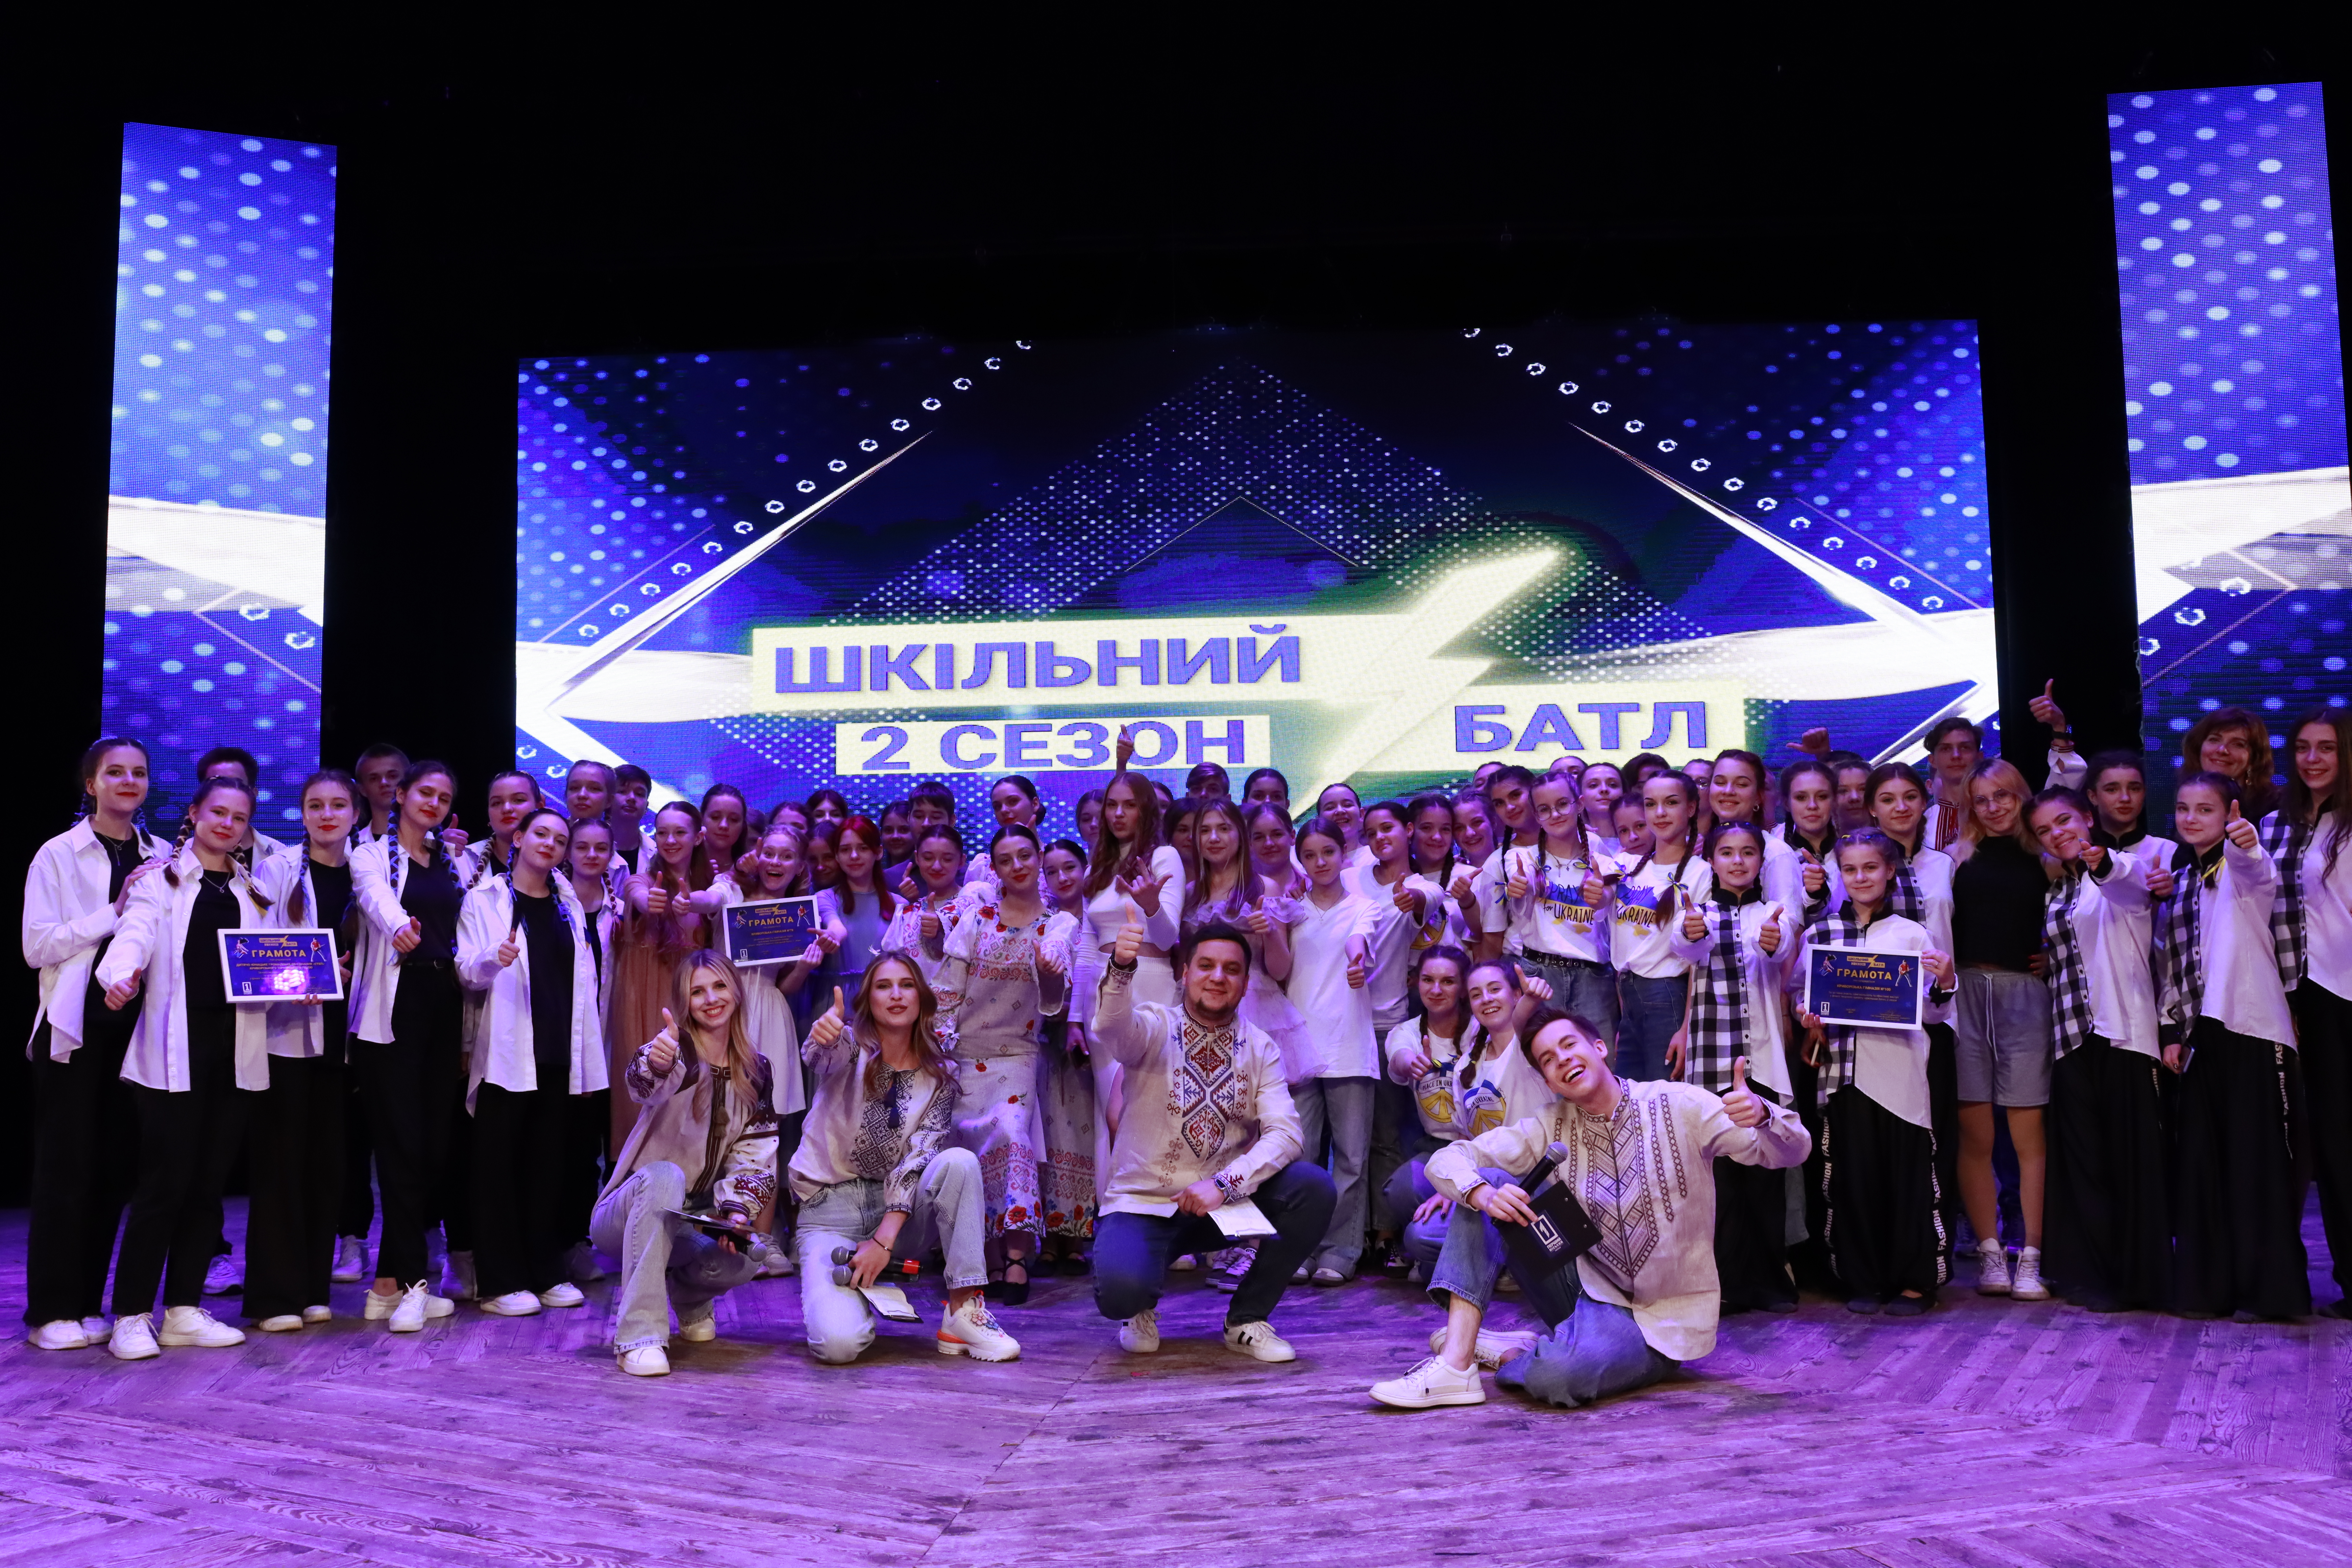 Об’єднали тисячі українських сердець: оголошені переможці другого сезону грандіозного «Шкільного батлу» від «Першого Міського» та Департаменту освіти і науки КМР